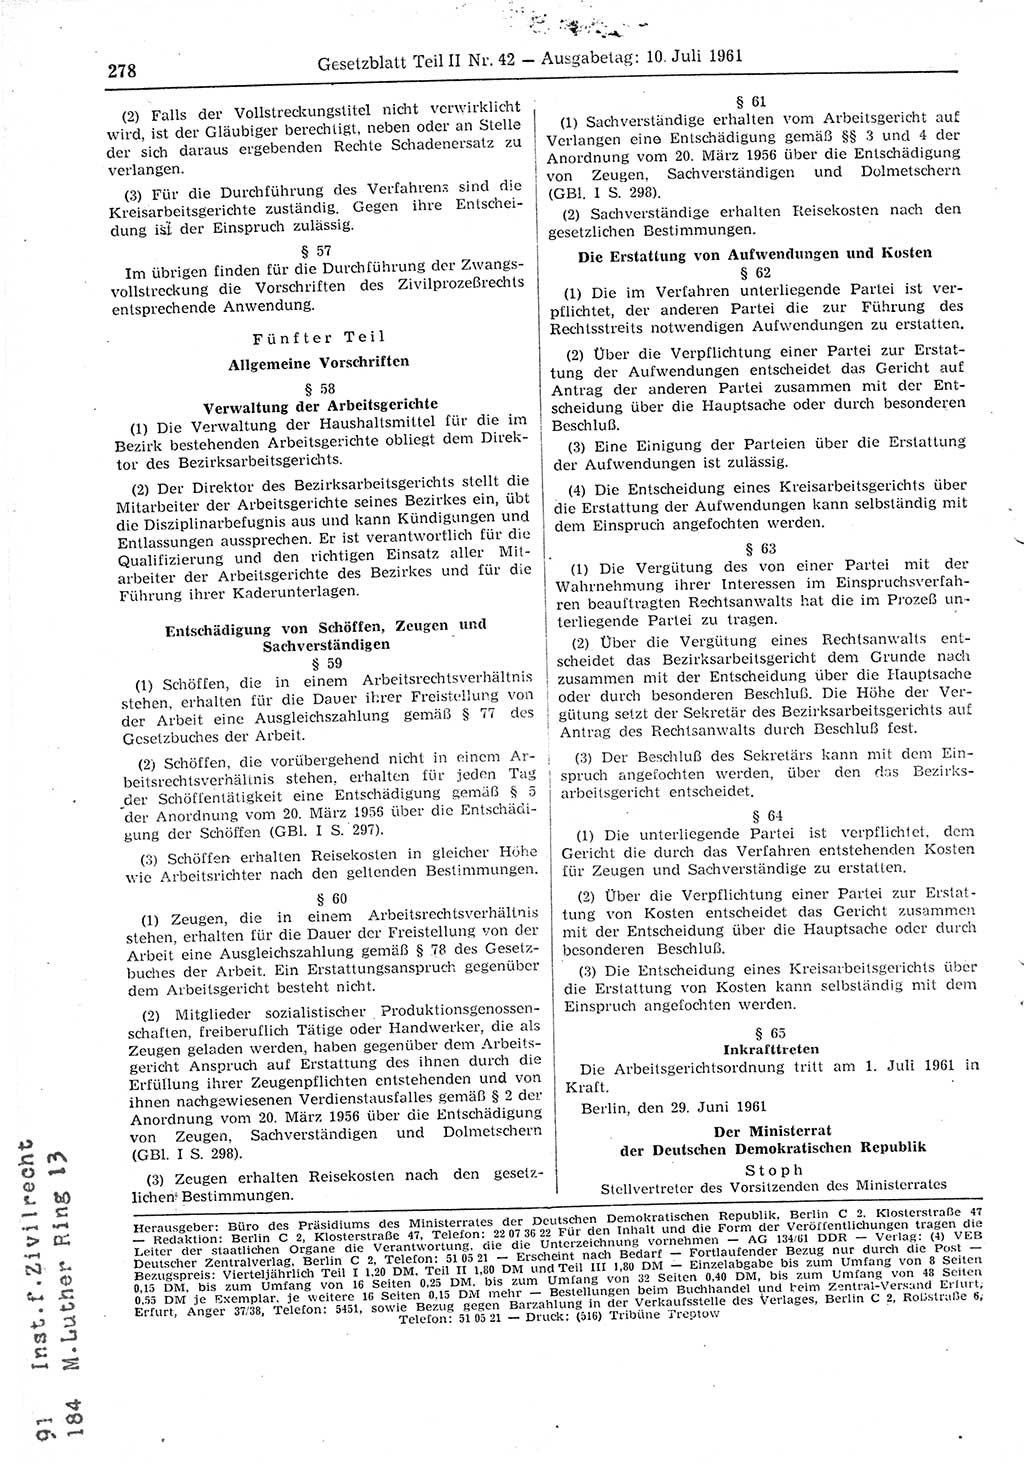 Gesetzblatt (GBl.) der Deutschen Demokratischen Republik (DDR) Teil ⅠⅠ 1961, Seite 278 (GBl. DDR ⅠⅠ 1961, S. 278)